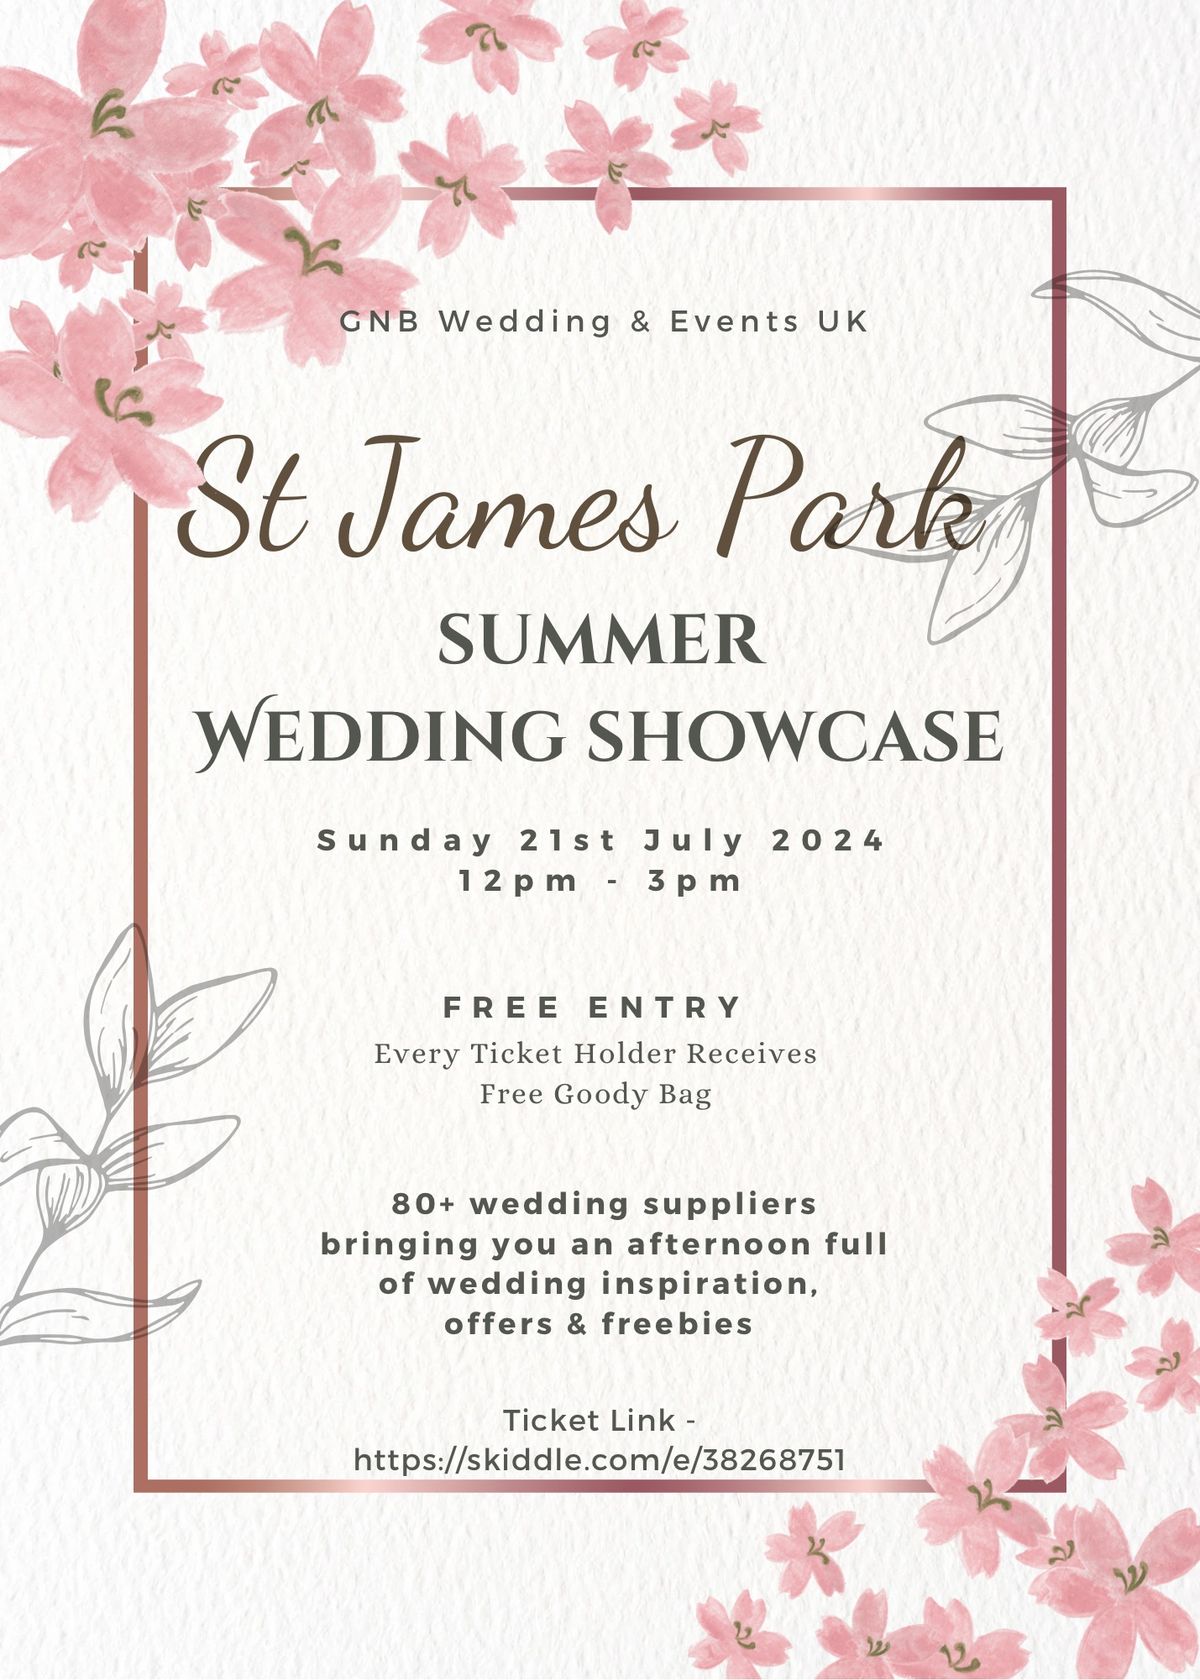 St James Park Summer Wedding Showcase